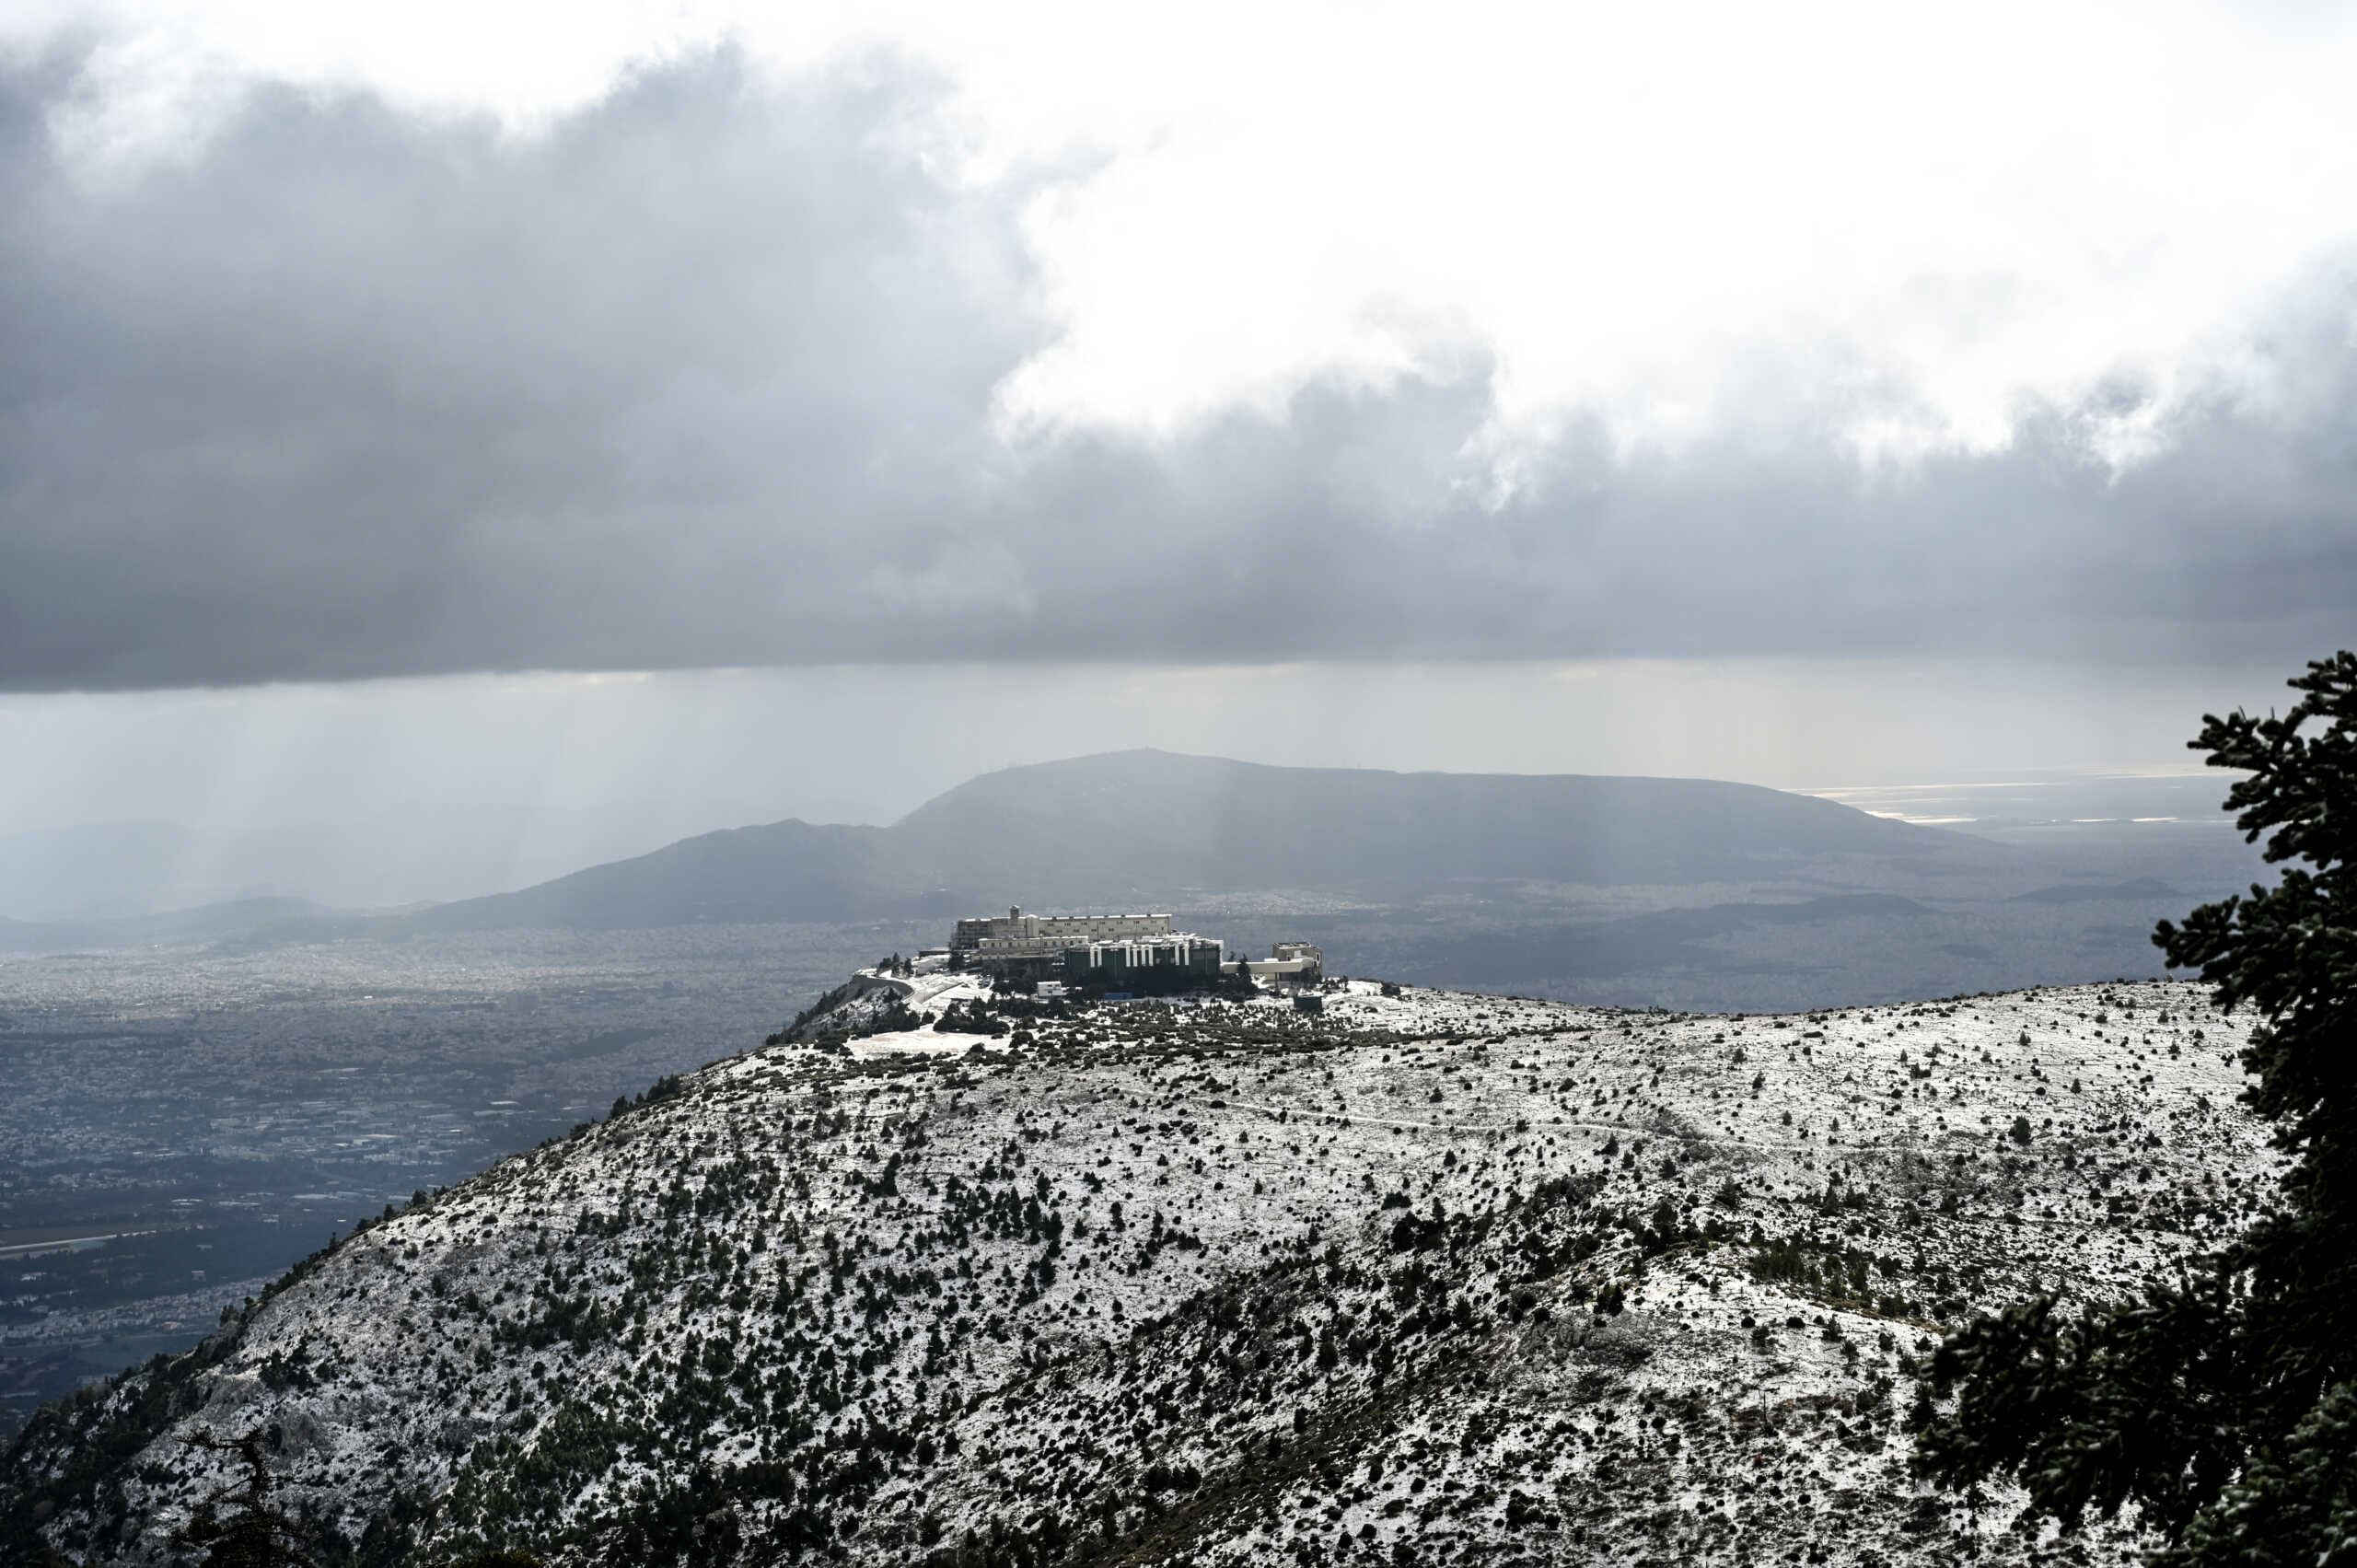 Σε εξαιρετικά χαμηλά επίπεδα η χιονοκάλυψη στην Ελλάδα: Τα λίγα χιόνια έλιωσαν τις πρώτες μέρες του Απριλίου